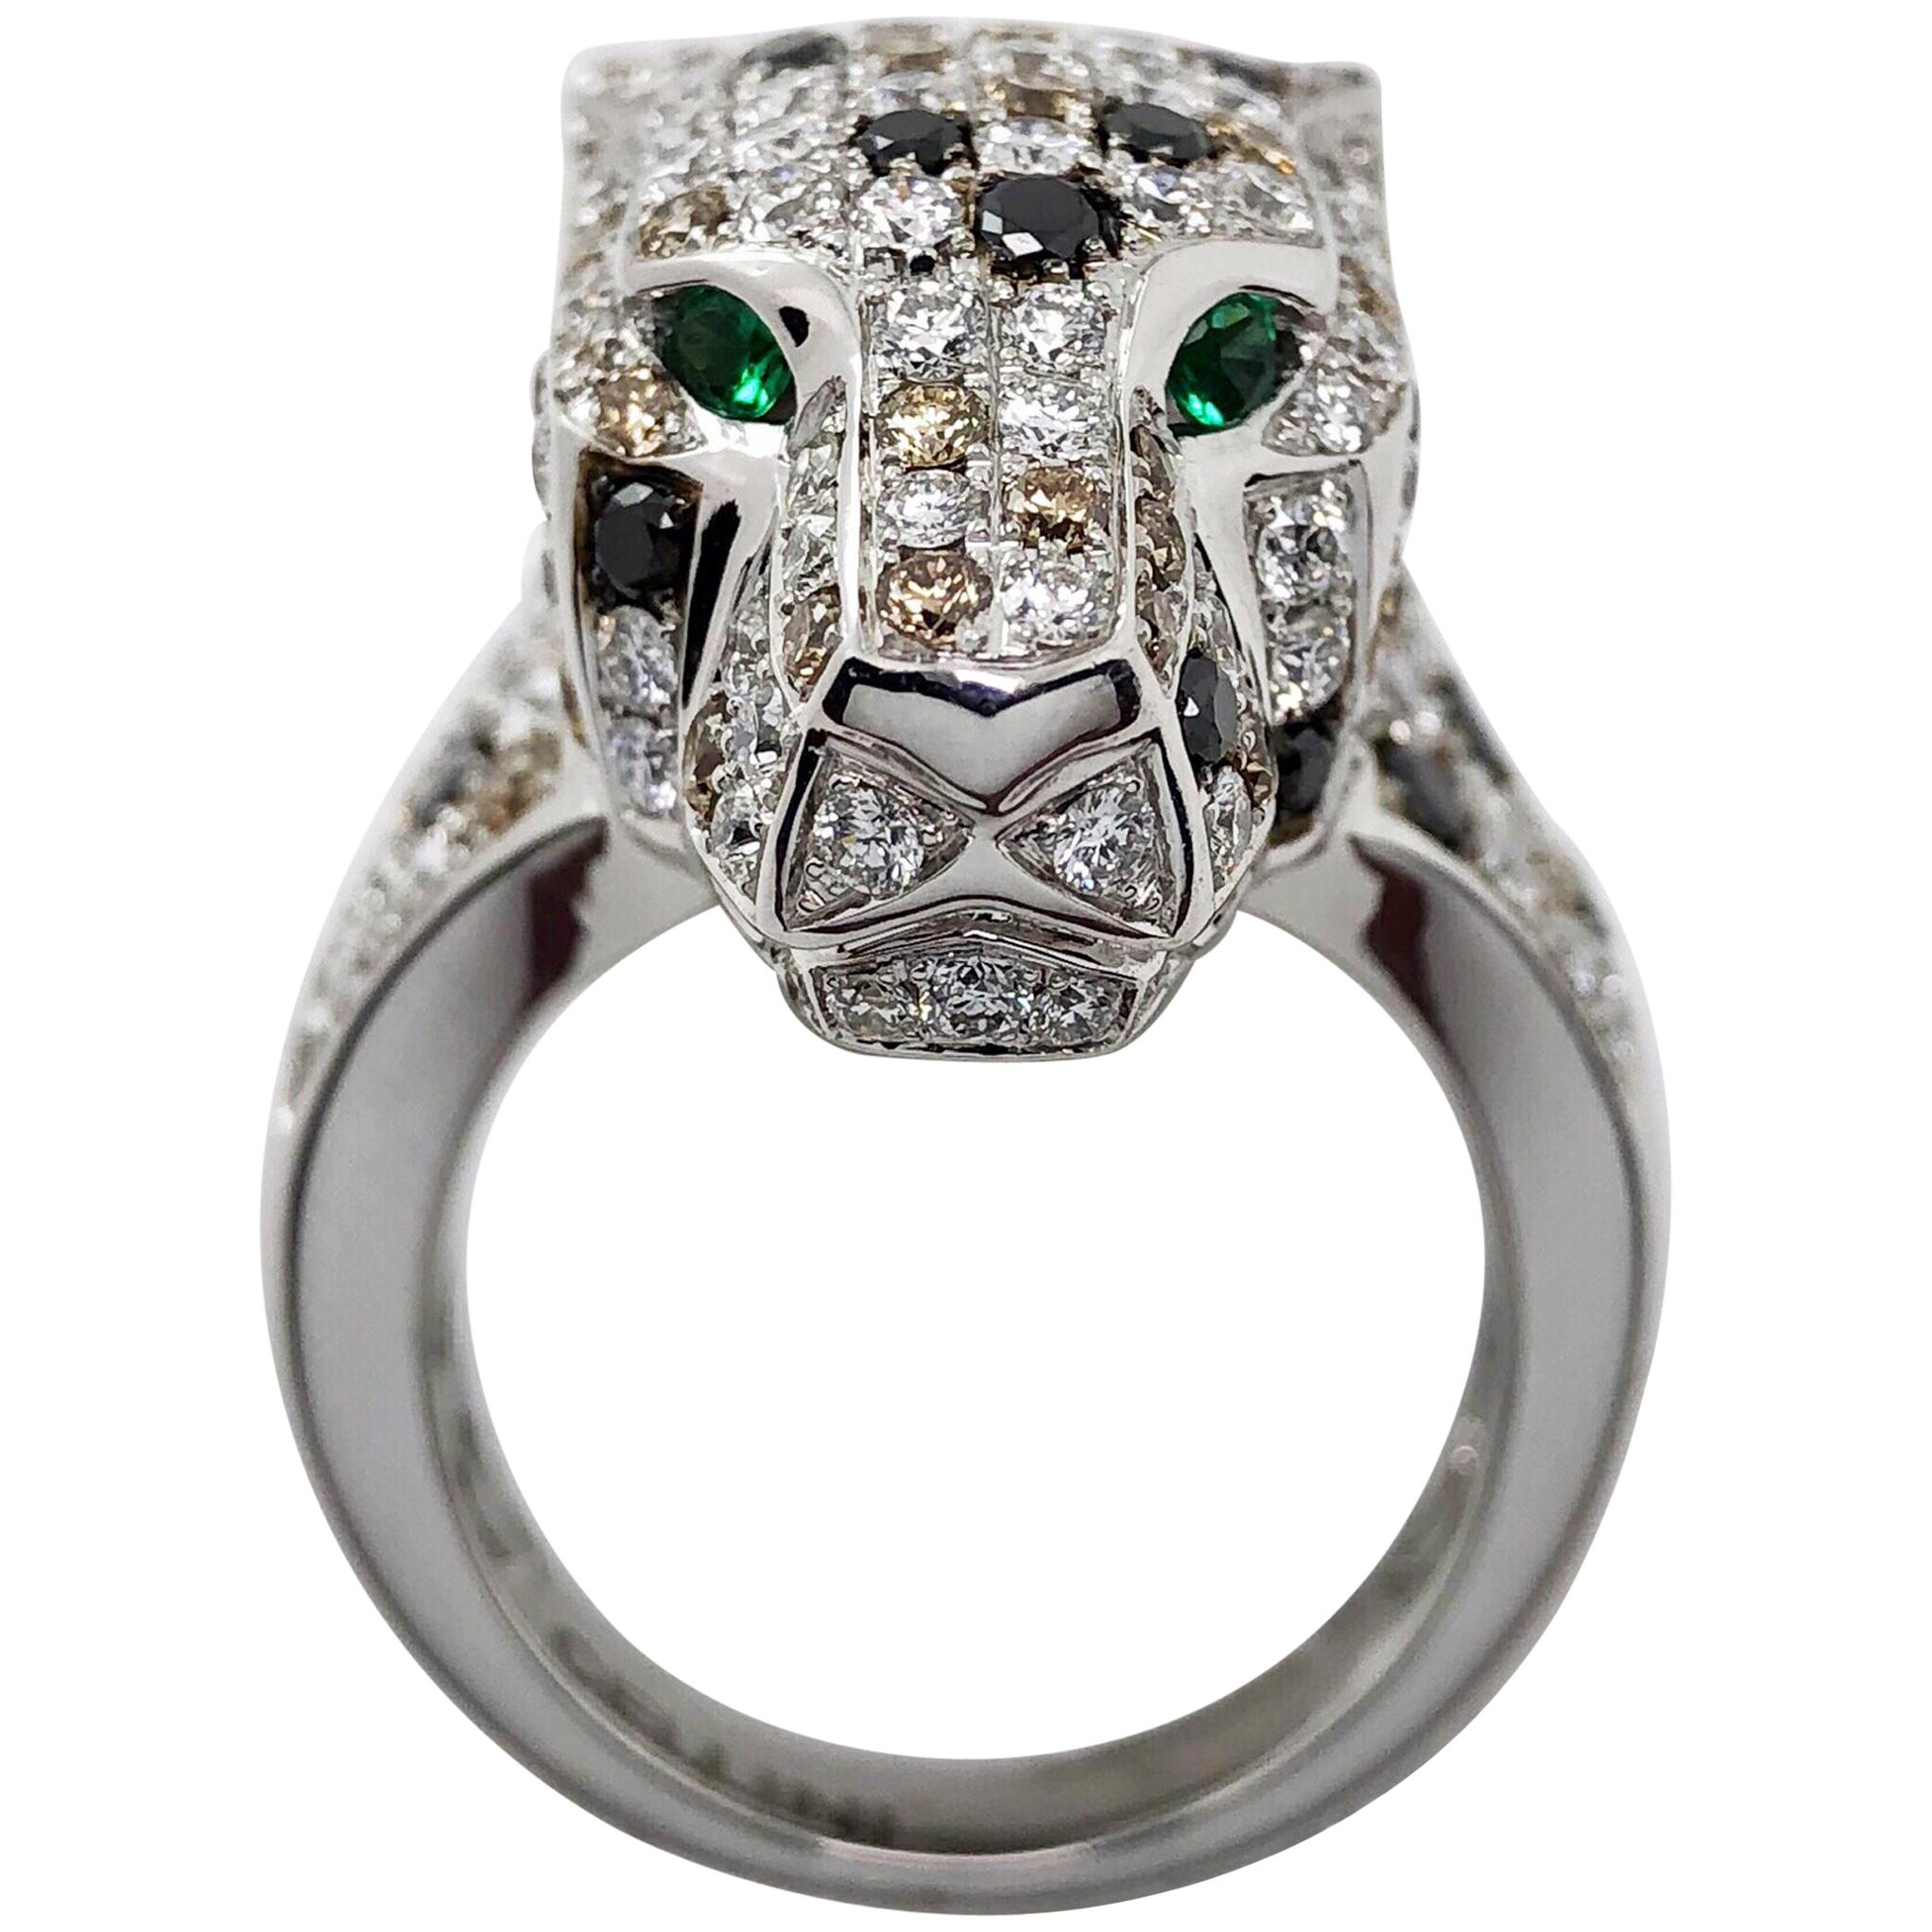 18 Karat White Gold and .55 Carat Diamond Panther Ring, Emerald Eyes